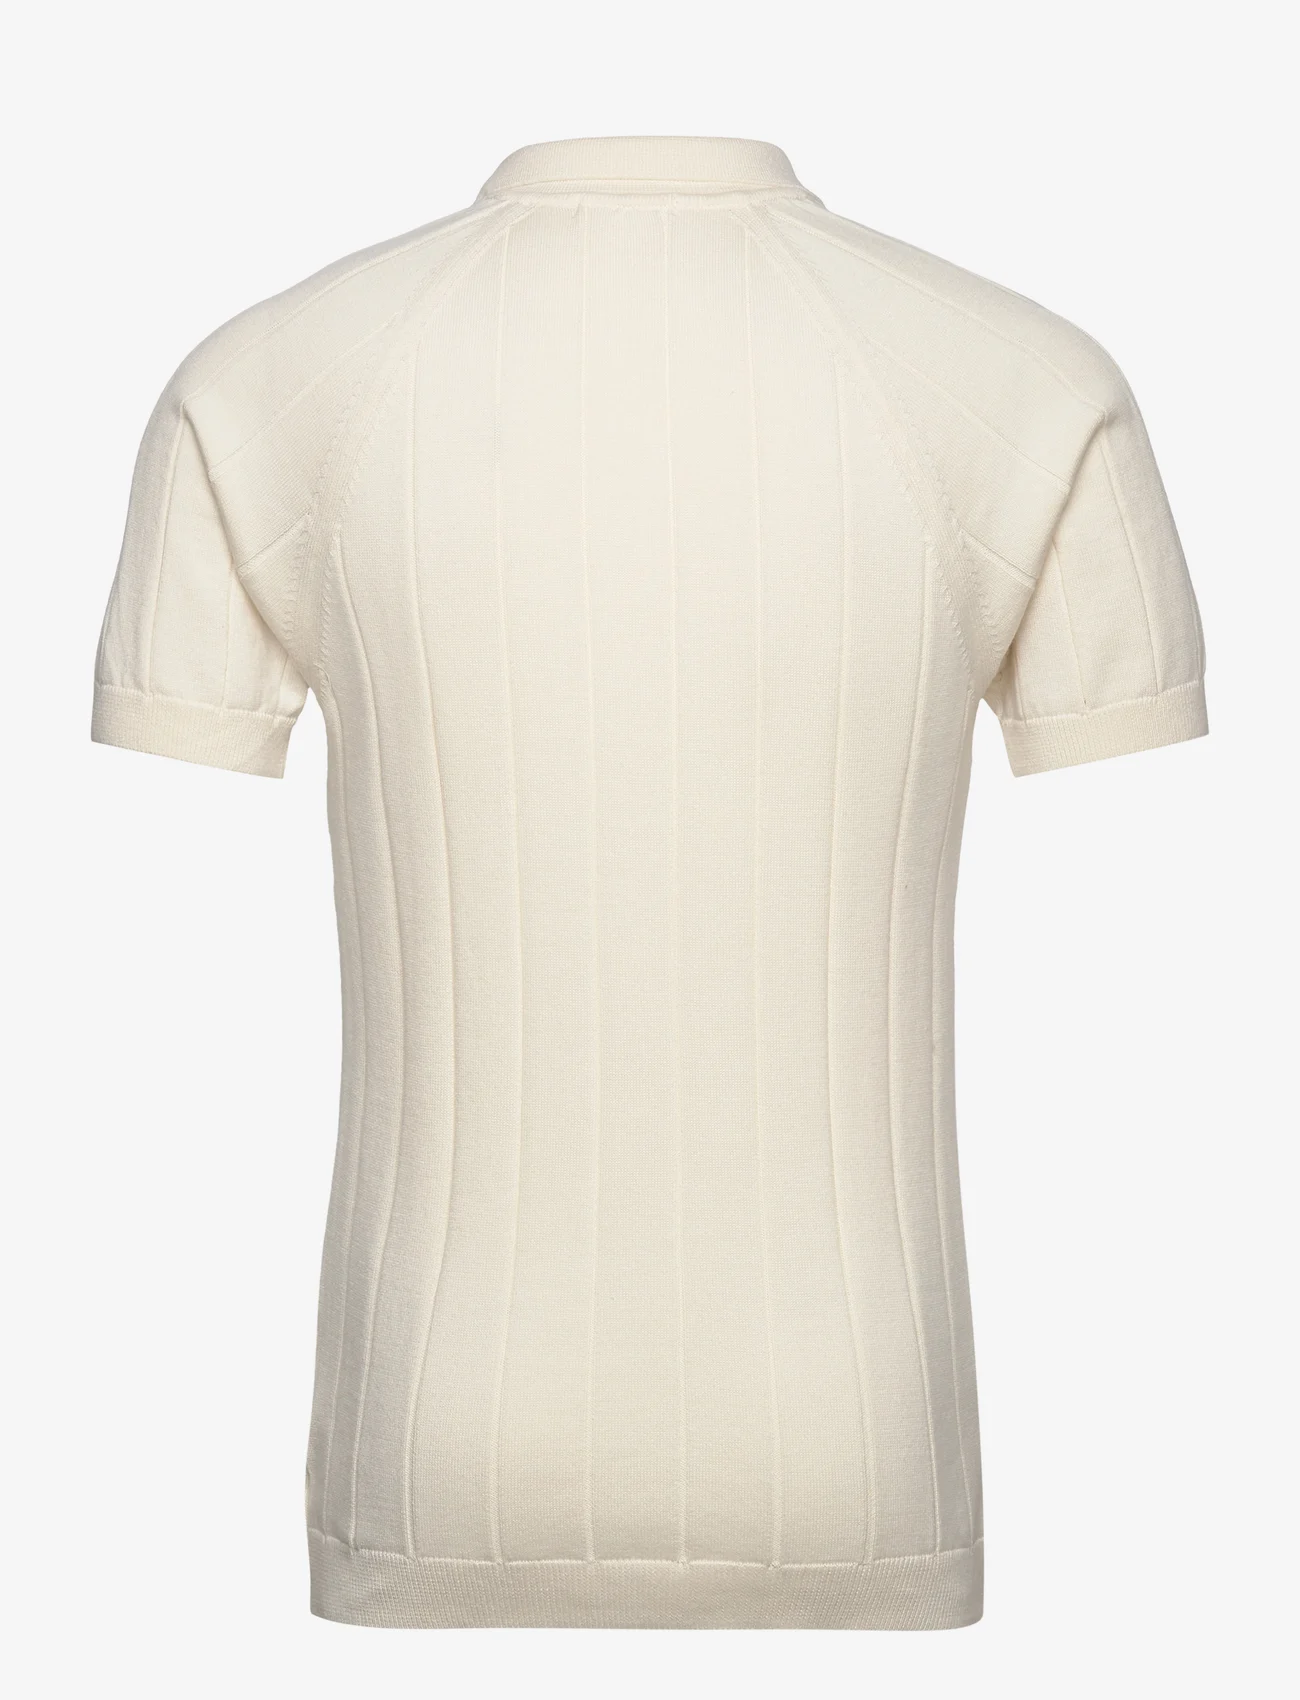 Knowledge Cotton Apparel - Regular short sleeved striped knitt - herren - egret - 1